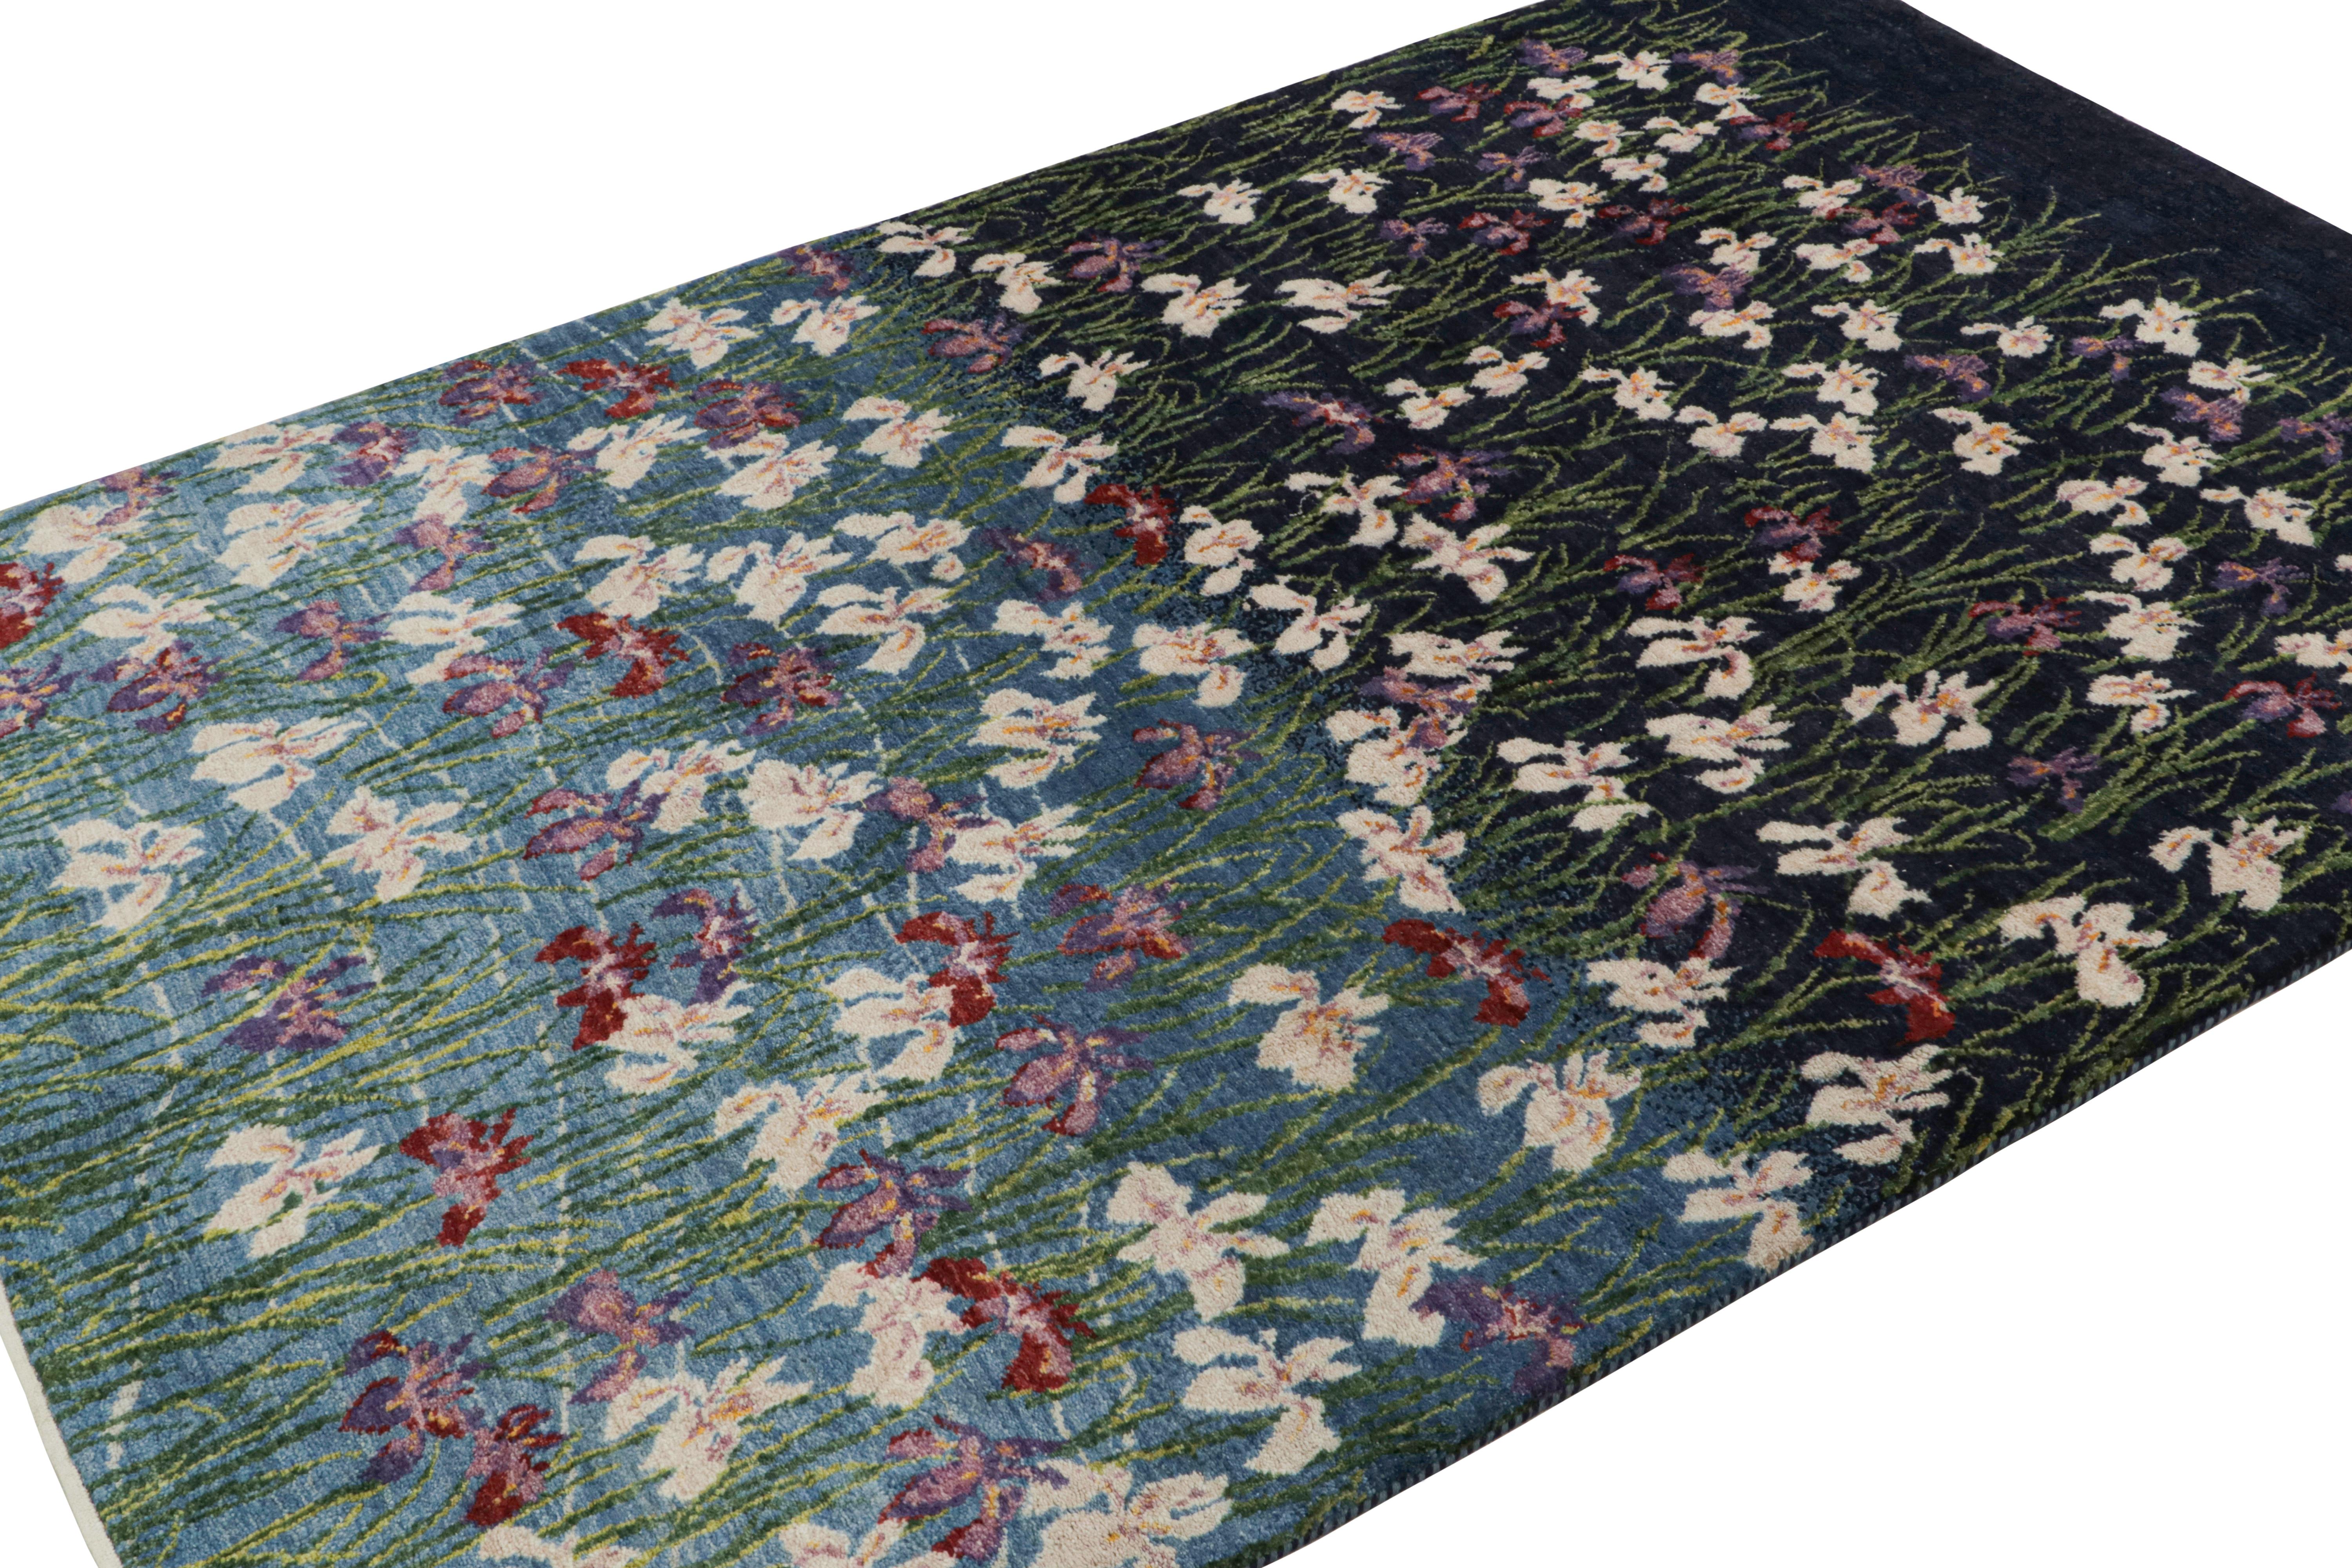 Noué à la main en laine, ce tapis contemporain de 5x7 s'inspire de motifs botaniques, où un mélange de bleus et de motifs floraux donne l'impression d'un étang ou d'un marais la nuit.

Sur le Design : 

Les yeux attentifs admireront un jeu naturel